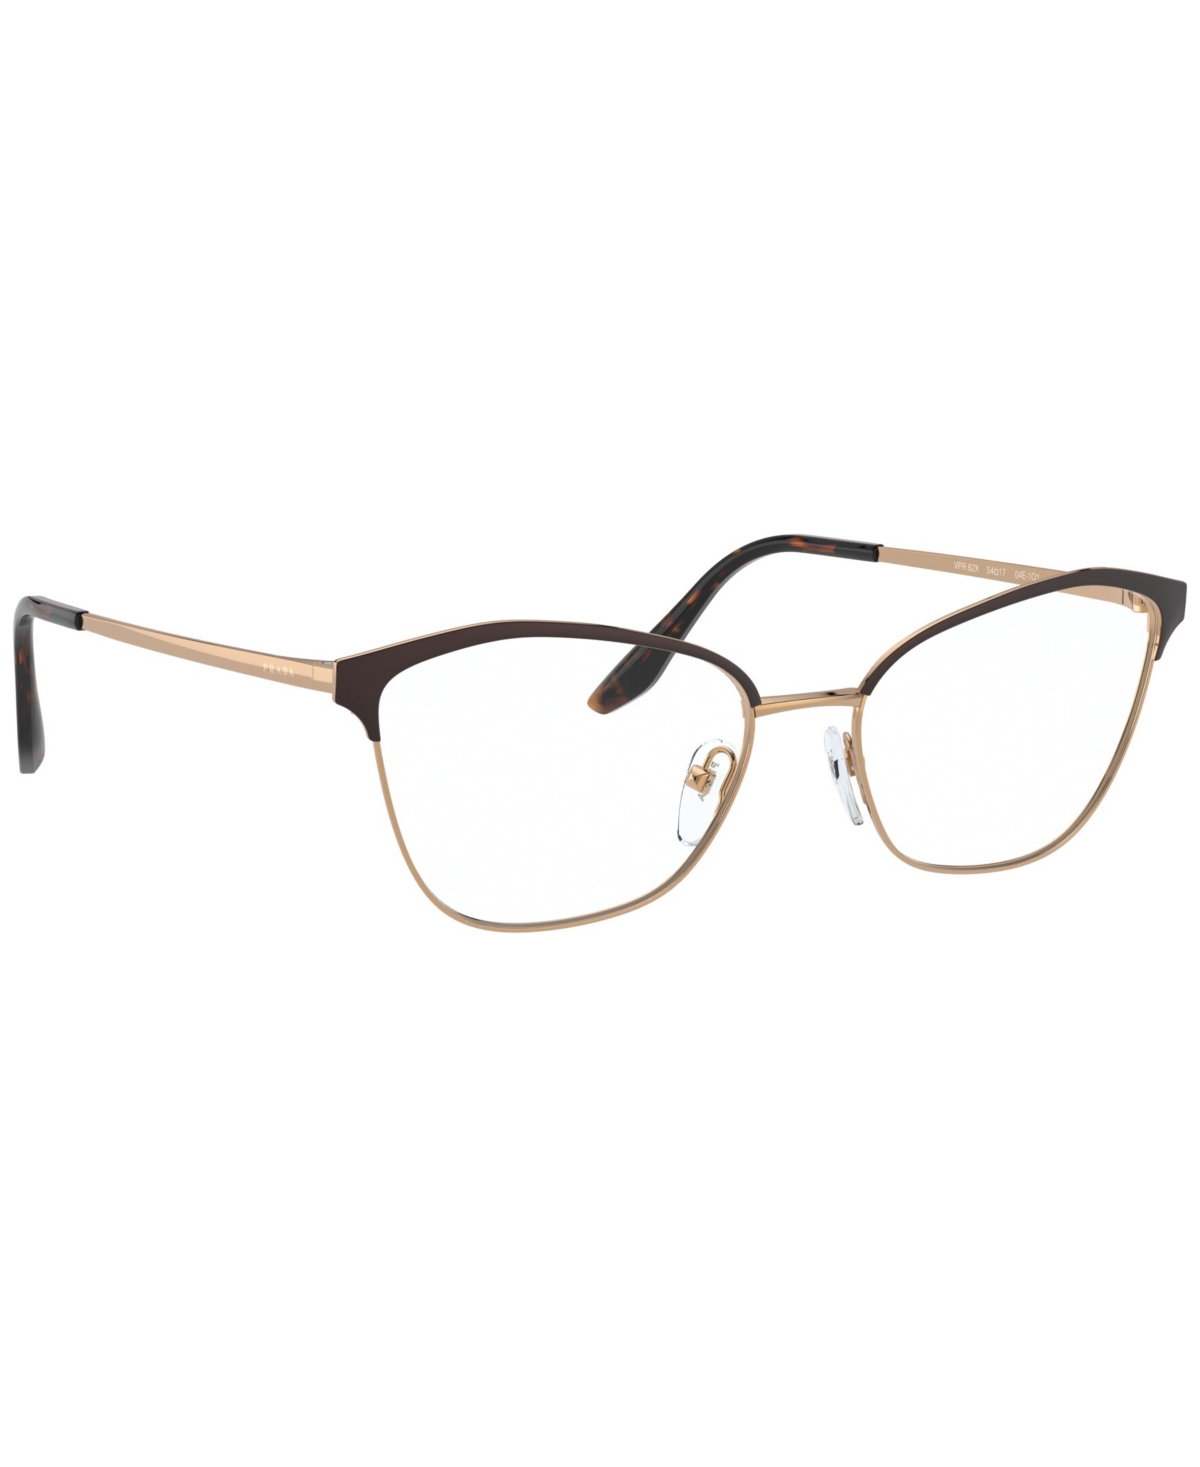 Women's Eyeglasses, Pr 62XV - Black, Light Gold